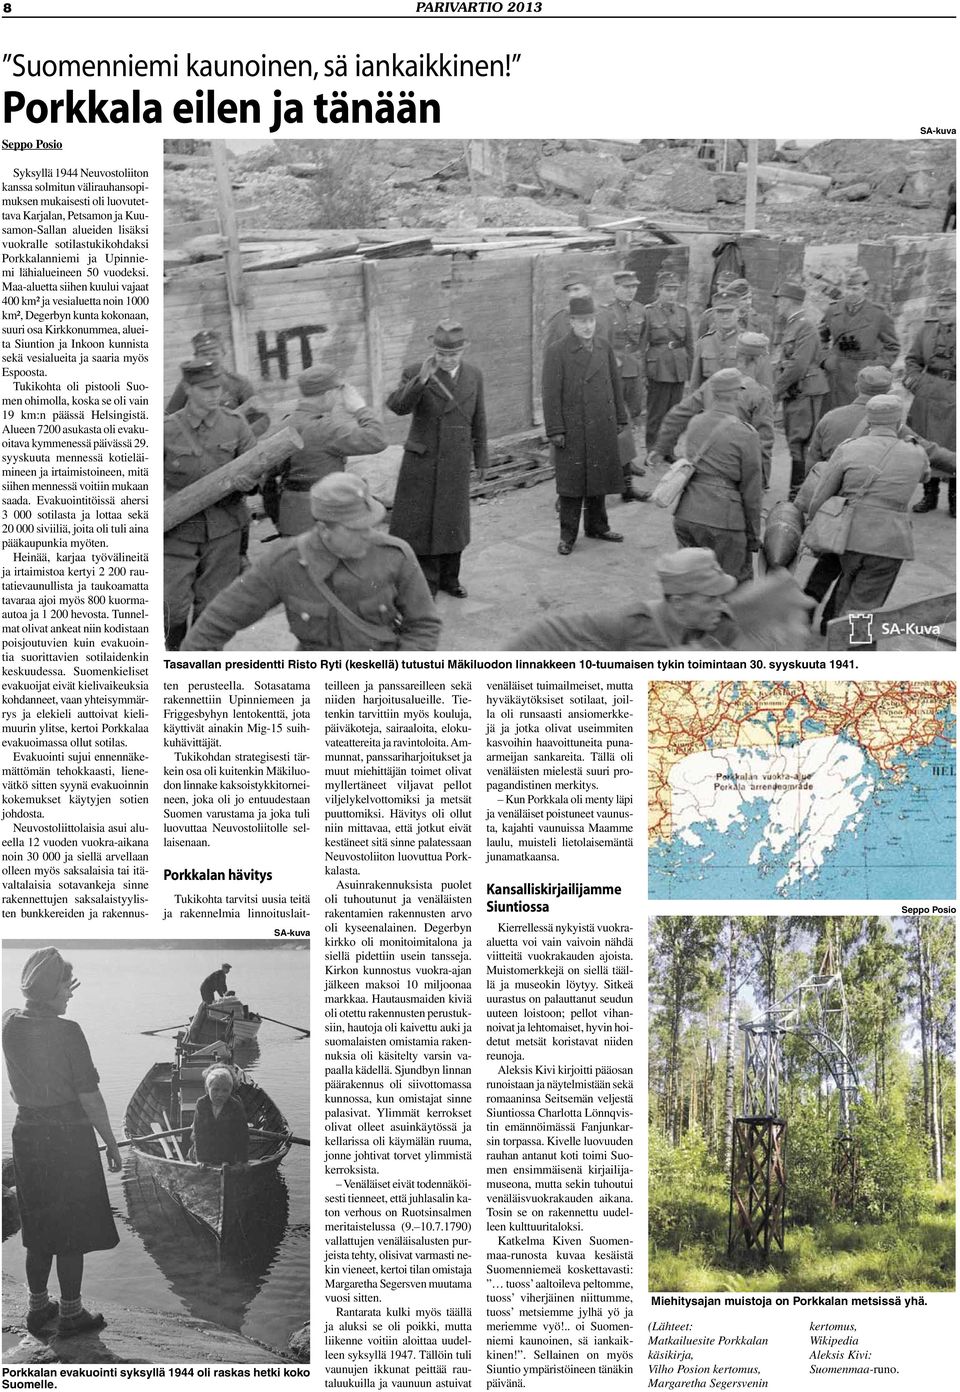 Syksyllä 1944 Neuvostoliiton kanssa solmitun välirauhansopimuksen mukaisesti oli luovutettava Karjalan, Petsamon ja Kuusamon-Sallan alueiden lisäksi vuokralle sotilastukikohdaksi Porkkalanniemi ja